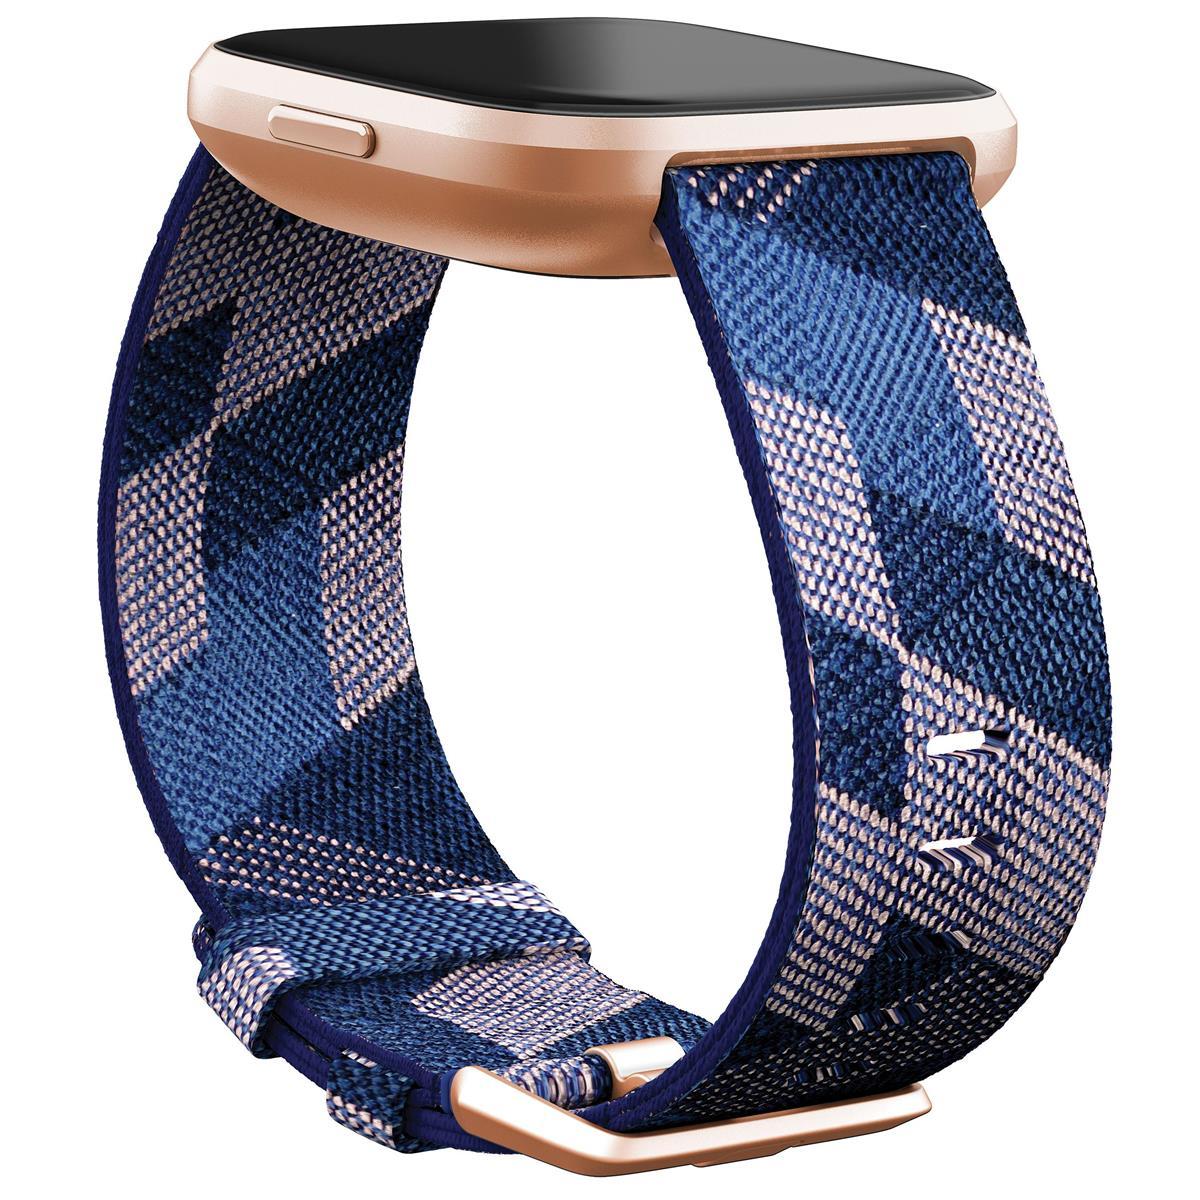 ساعة ذكية فيتبيت فيرسا 2 إصدار خاص للصحة واللياقة البدنية - لون نيفي مع زهري /نحاسي روز ألومنيوم